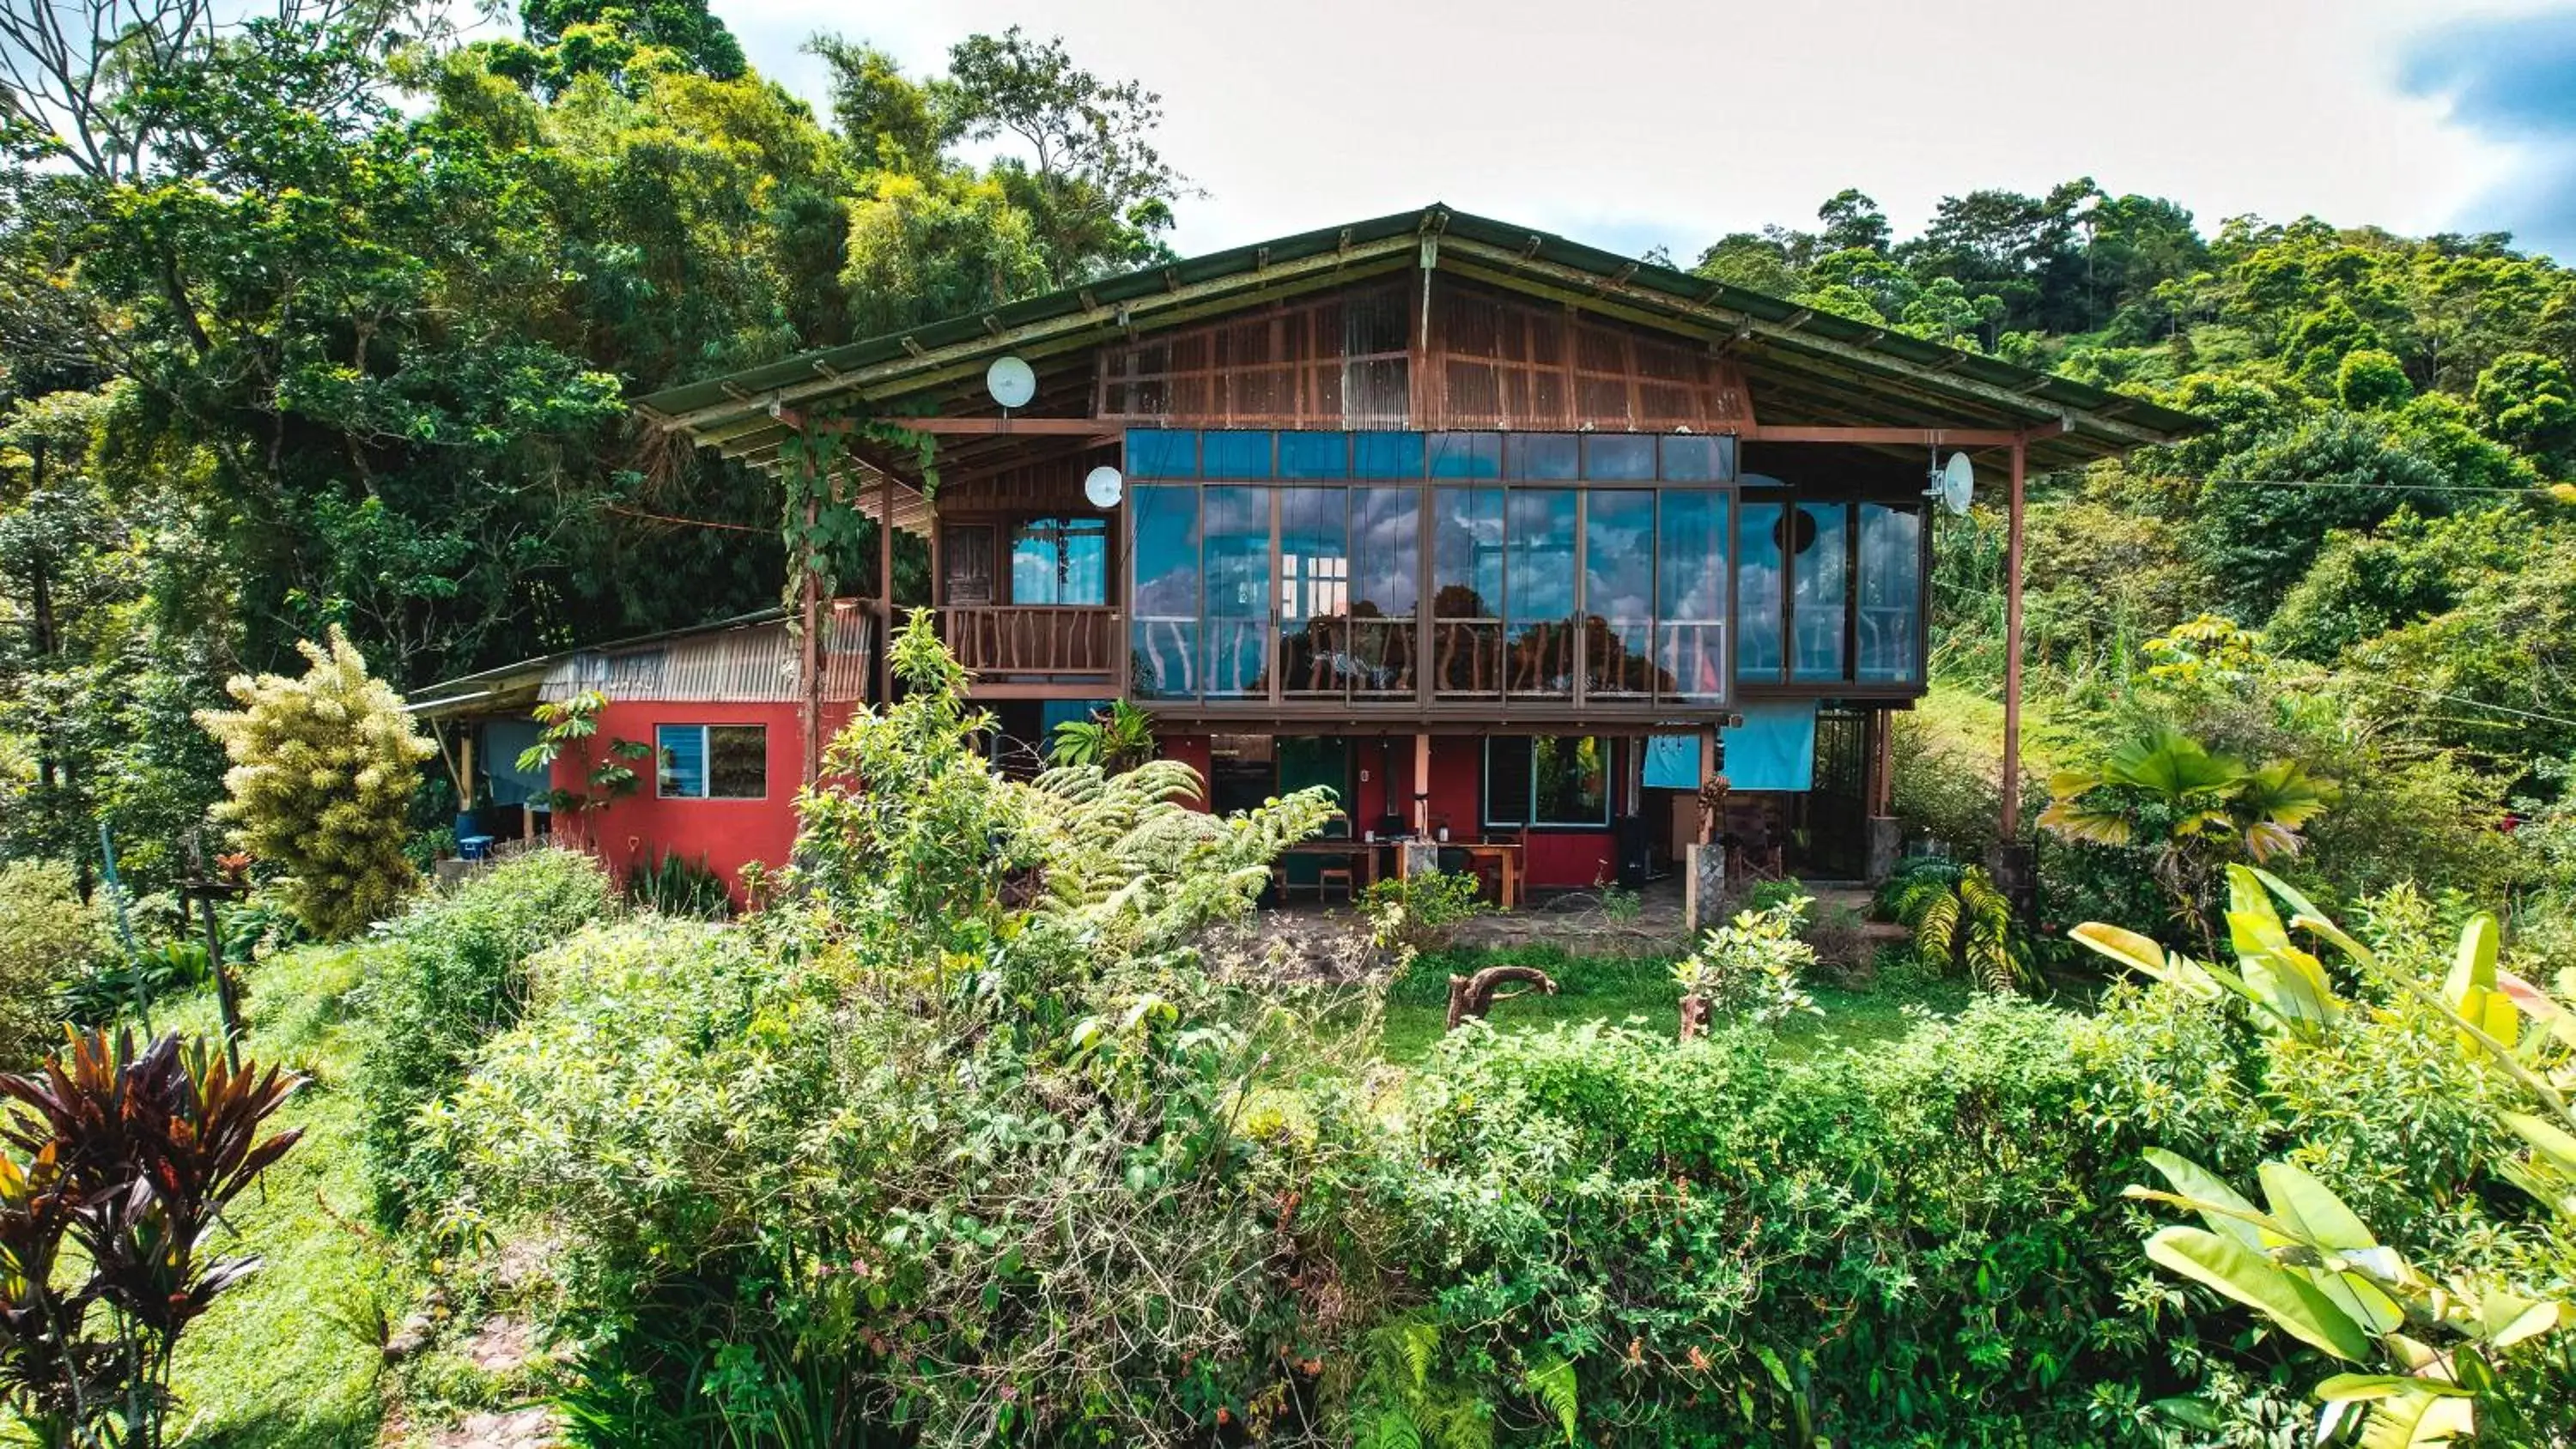 Property Building in Birds & Breakfast Costa Rica